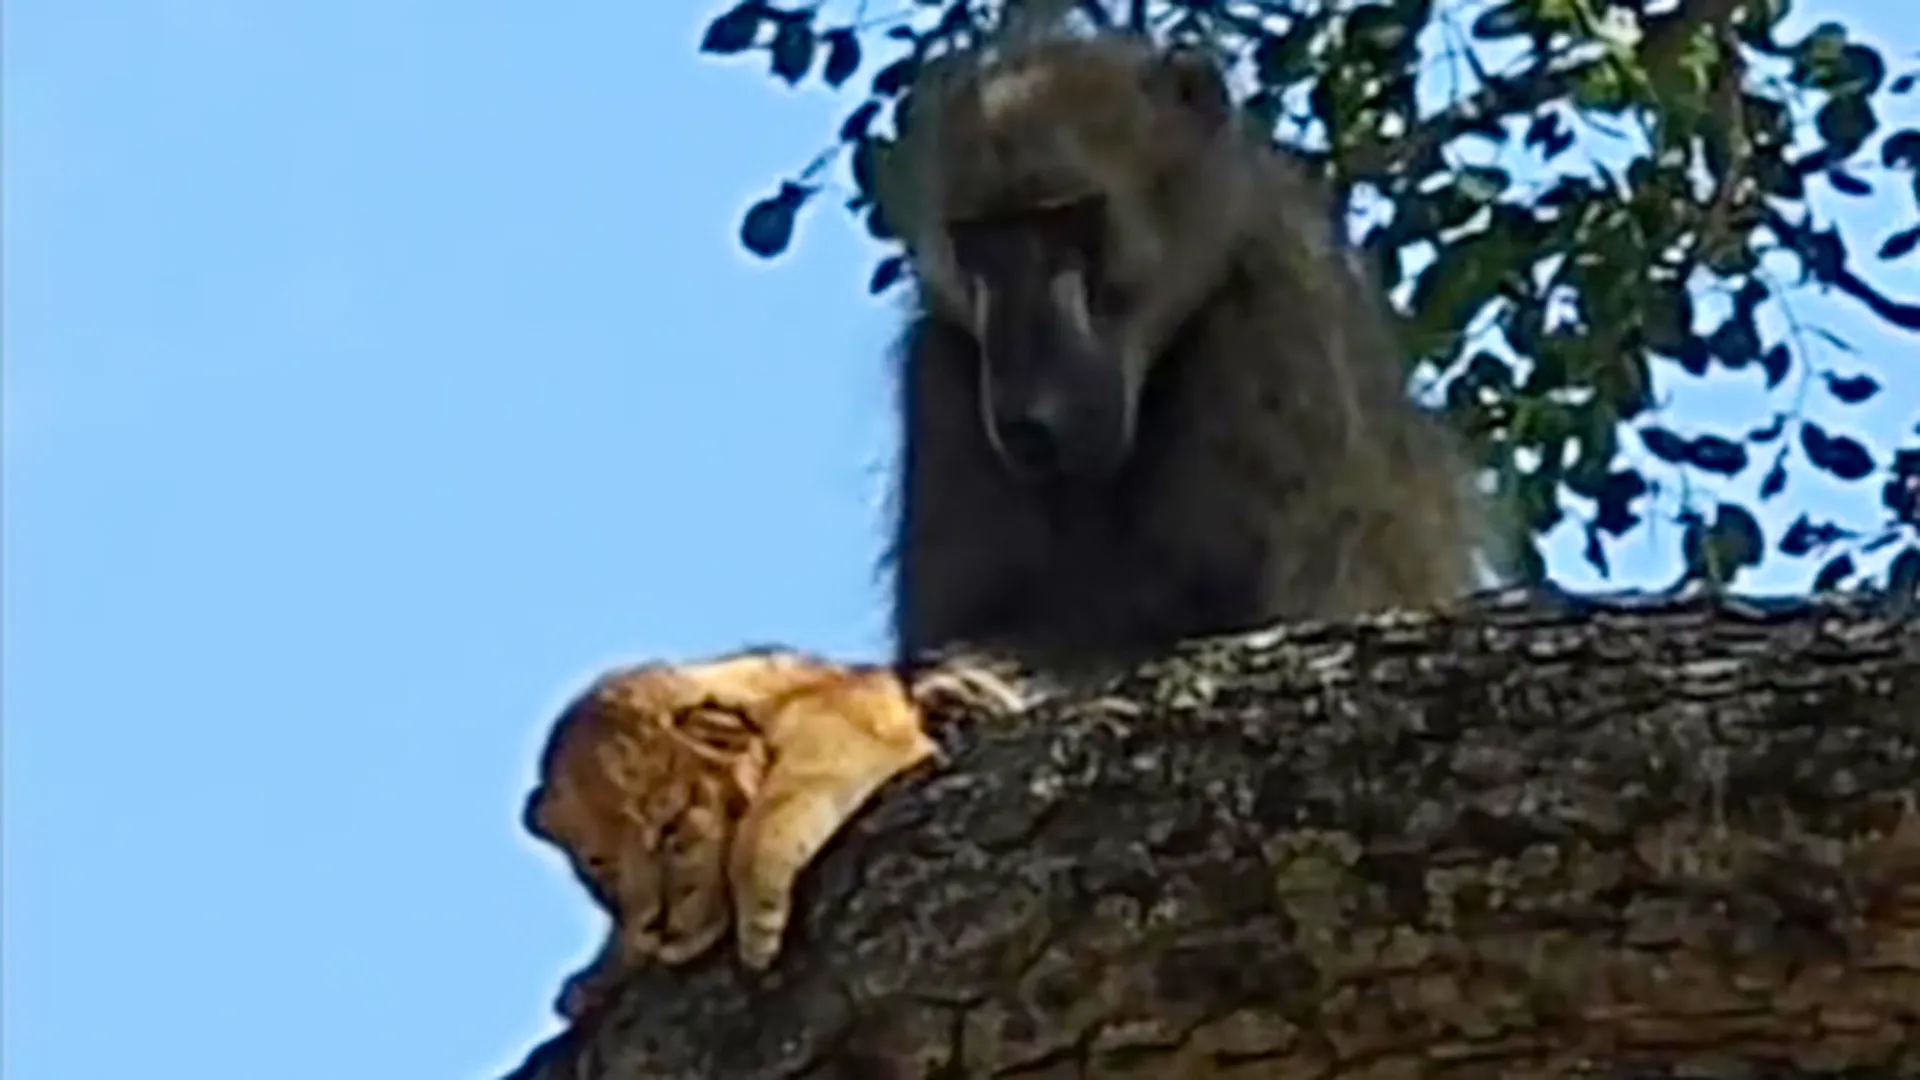 Бабуина со львенком в лапах заметили в Африке. Кадр похож на сцену из «Короля Льва», но все не так радужно